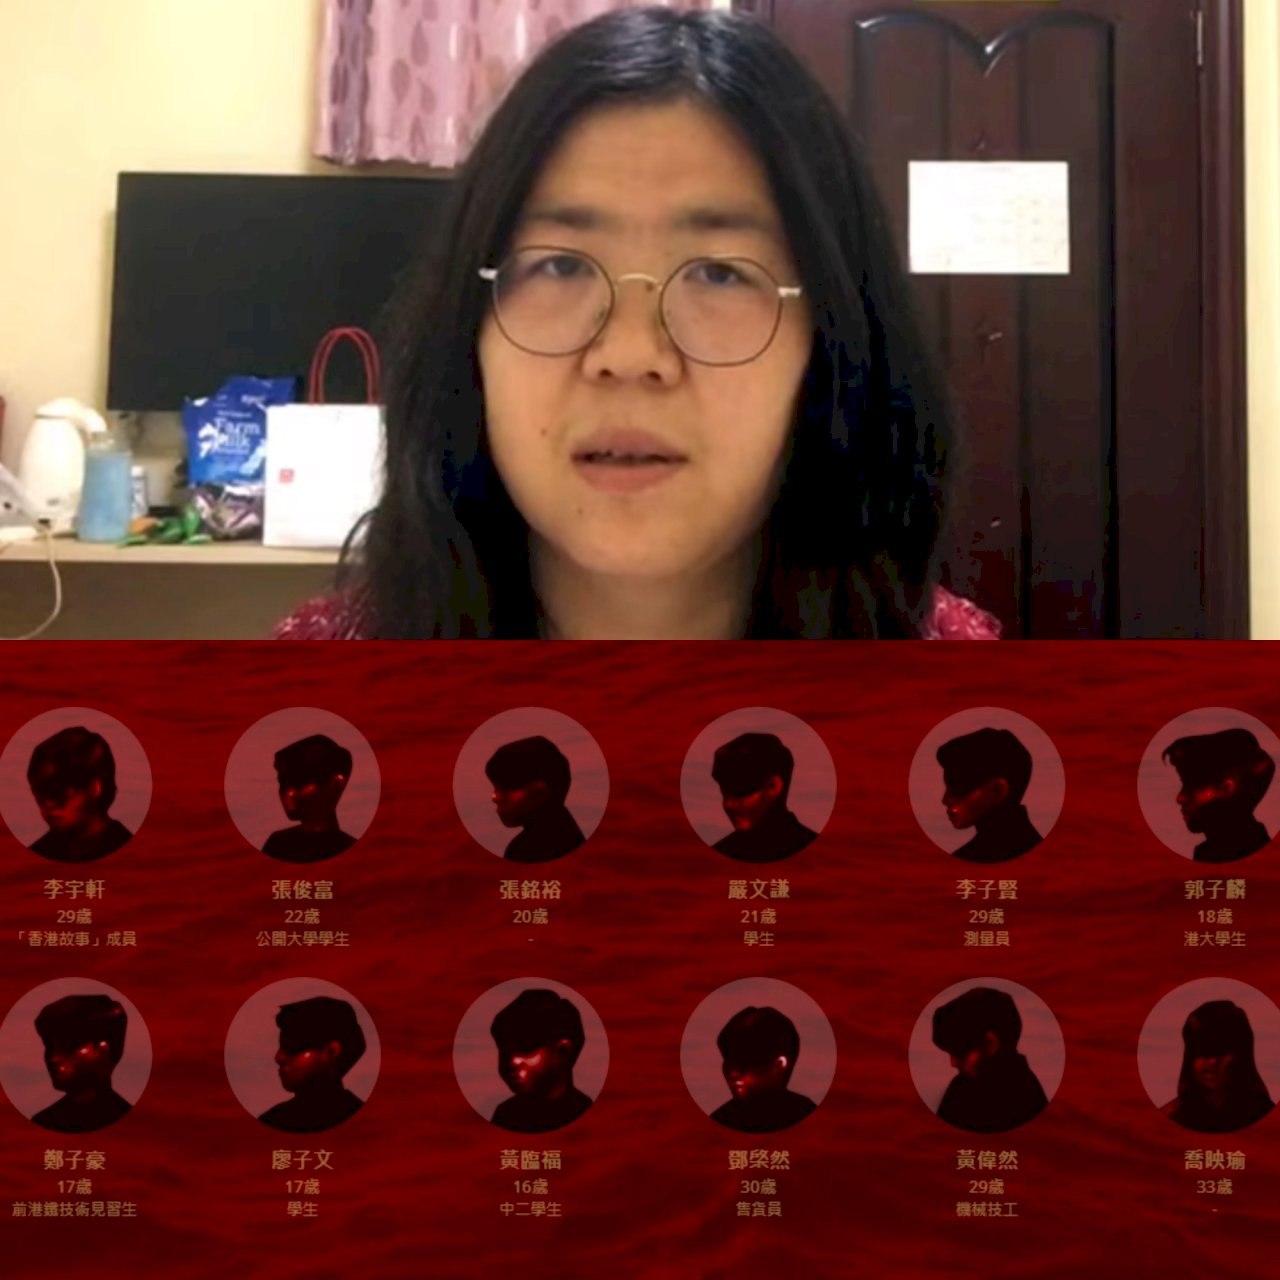 中國「聖誕節鎮壓」 張展與12港人案開庭受關注(影音)